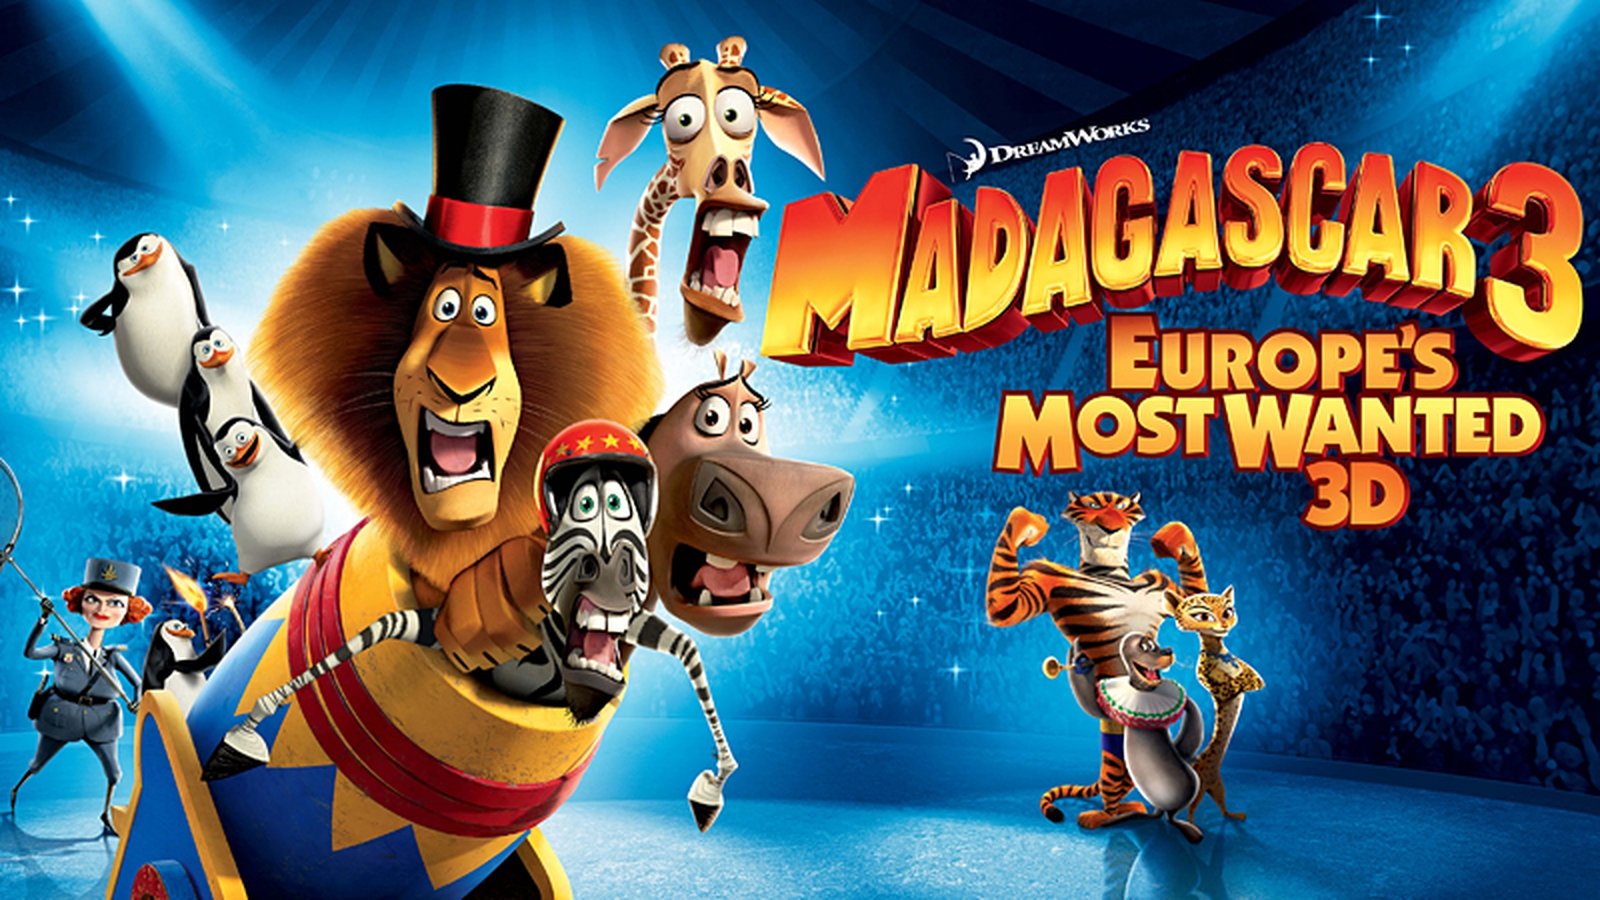 Мадагаскар челны афиша на сегодня. Madagascar 3 Europe's most wanted. Мадагаскар 3 Madagascar 3 Europe's most wanted 2012. Мадагаскар 3 (2012) poster. Дримворкс Мадагаскар 3.